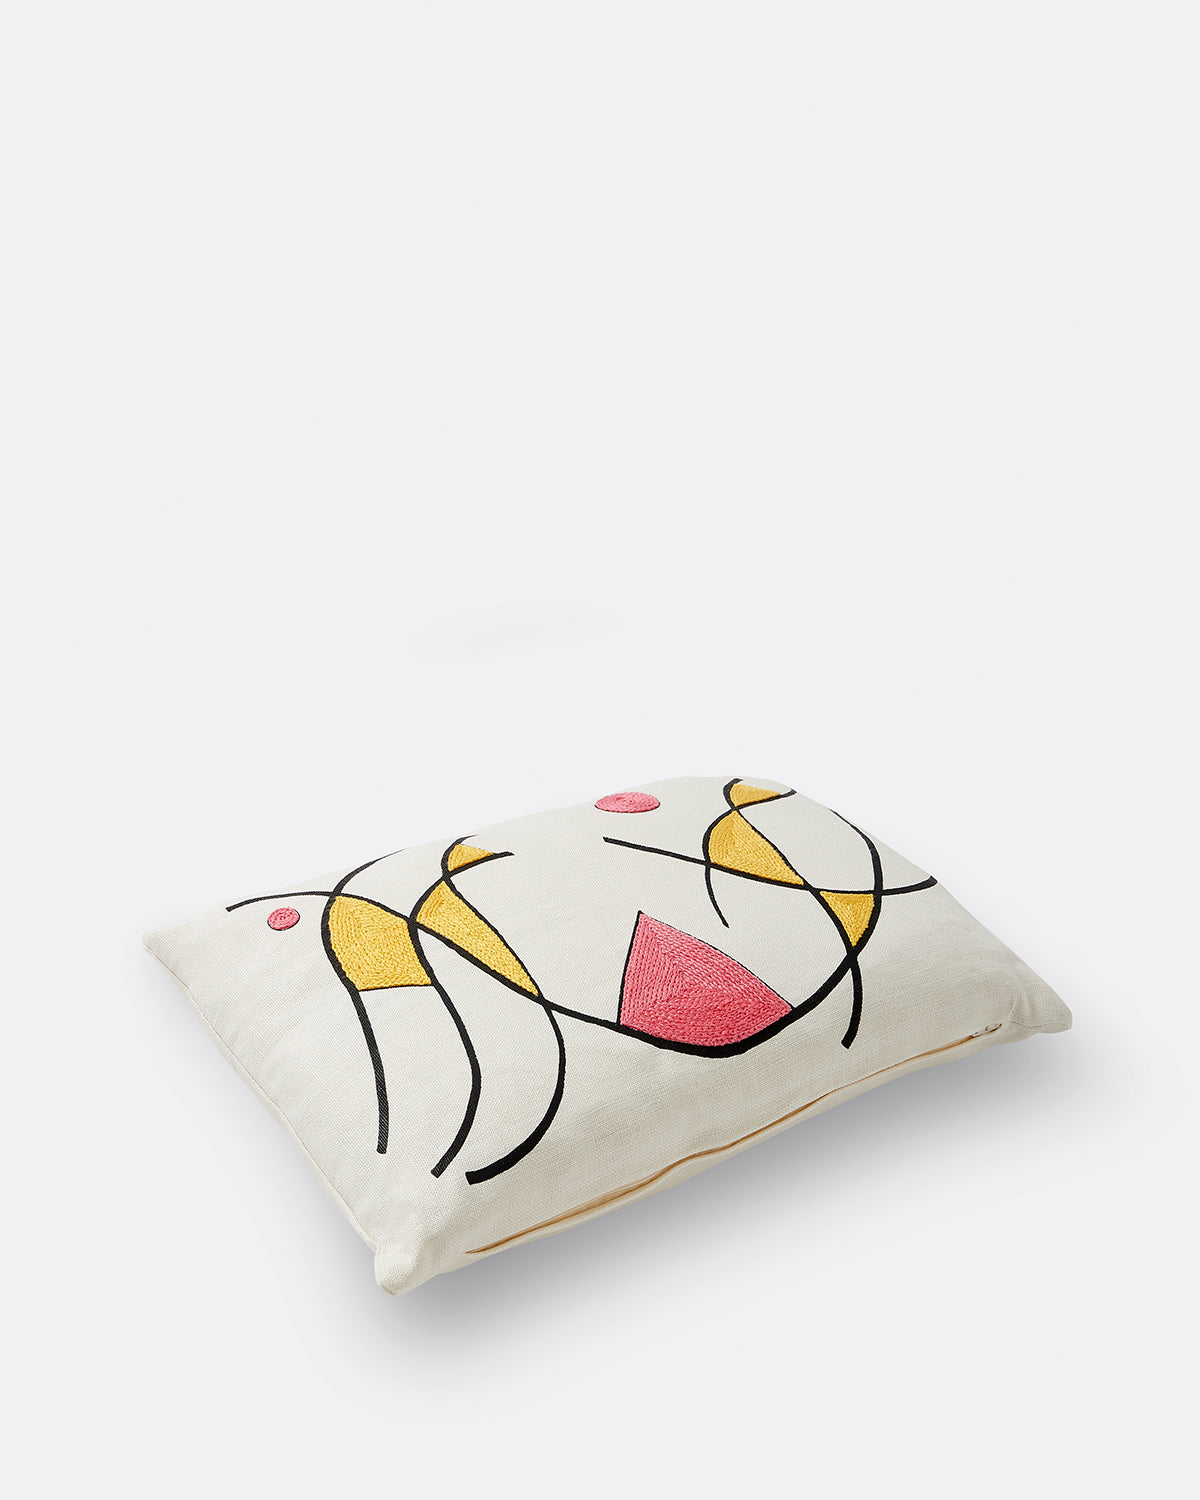 Geta Bratescu Cushion Yellow & Pink Collage